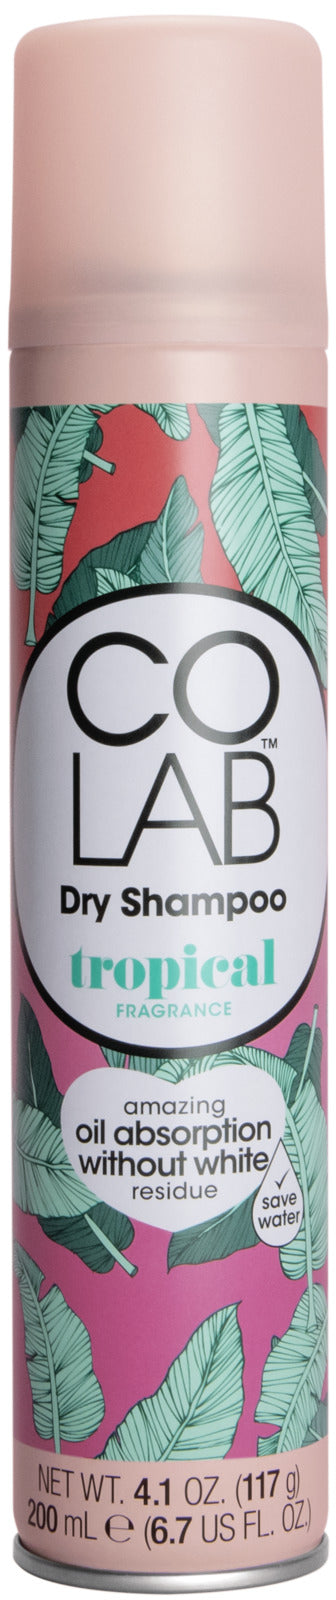 Co Lab: Dry Shampoo - Tropical (200ml)